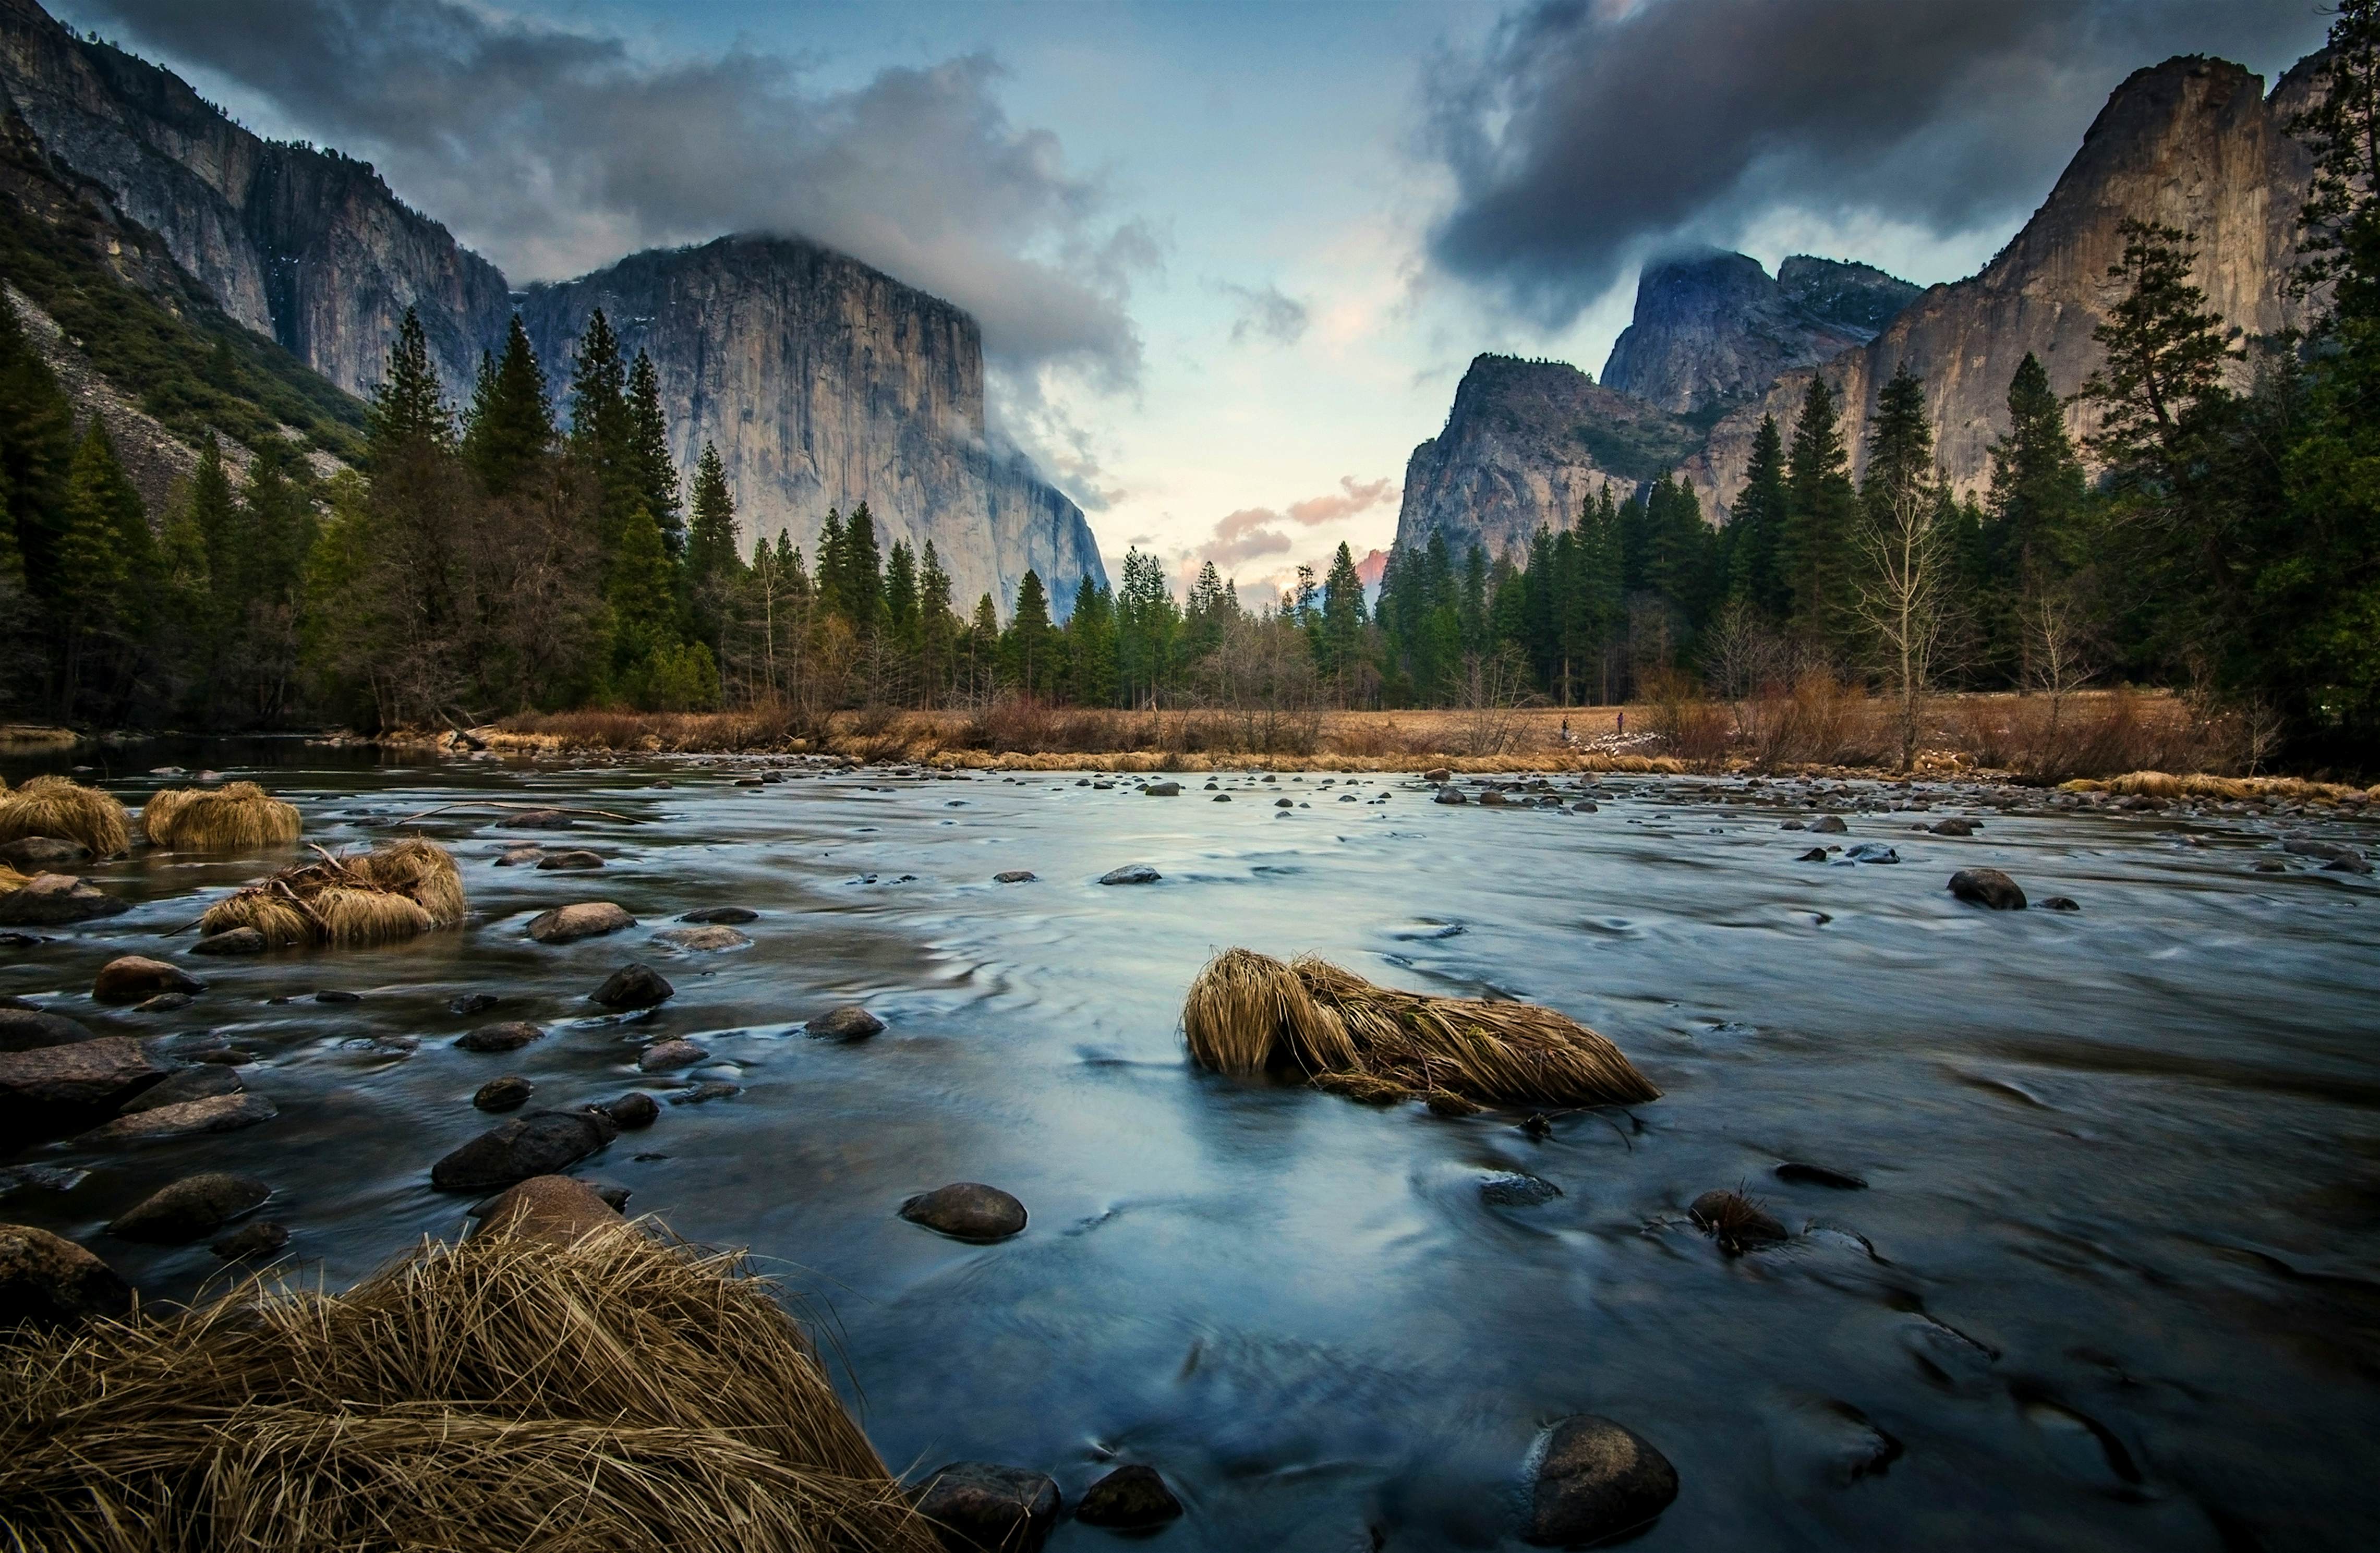 Yosemite National Park Tours » Arthatravel.com